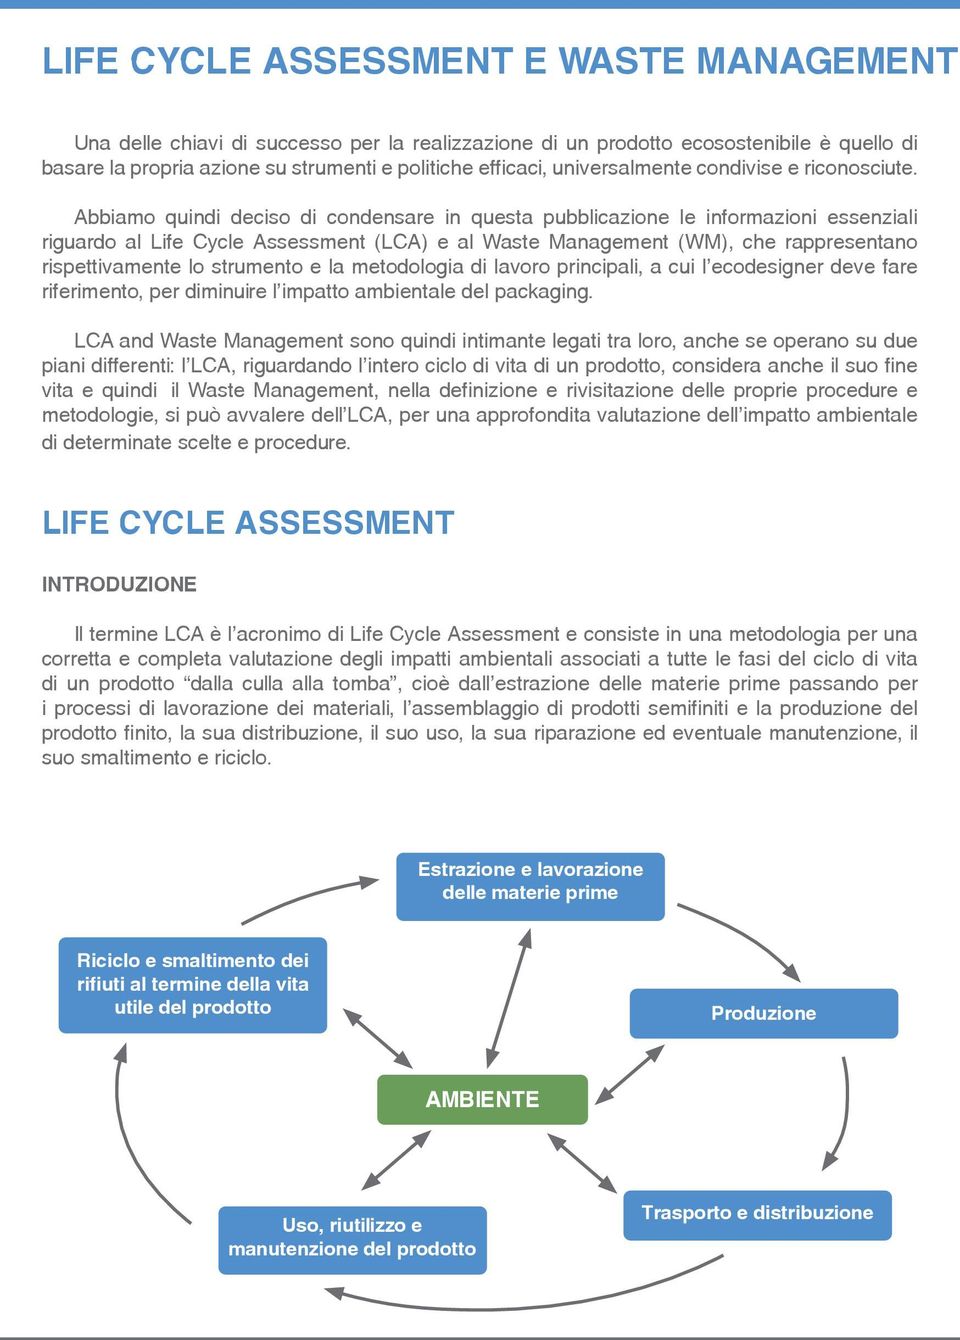 Abbiamo quindi deciso di condensare in questa pubblicazione le informazioni essenziali riguardo al Life Cycle Assessment (LCA) e al Waste Management (WM), che rappresentano rispettivamente lo